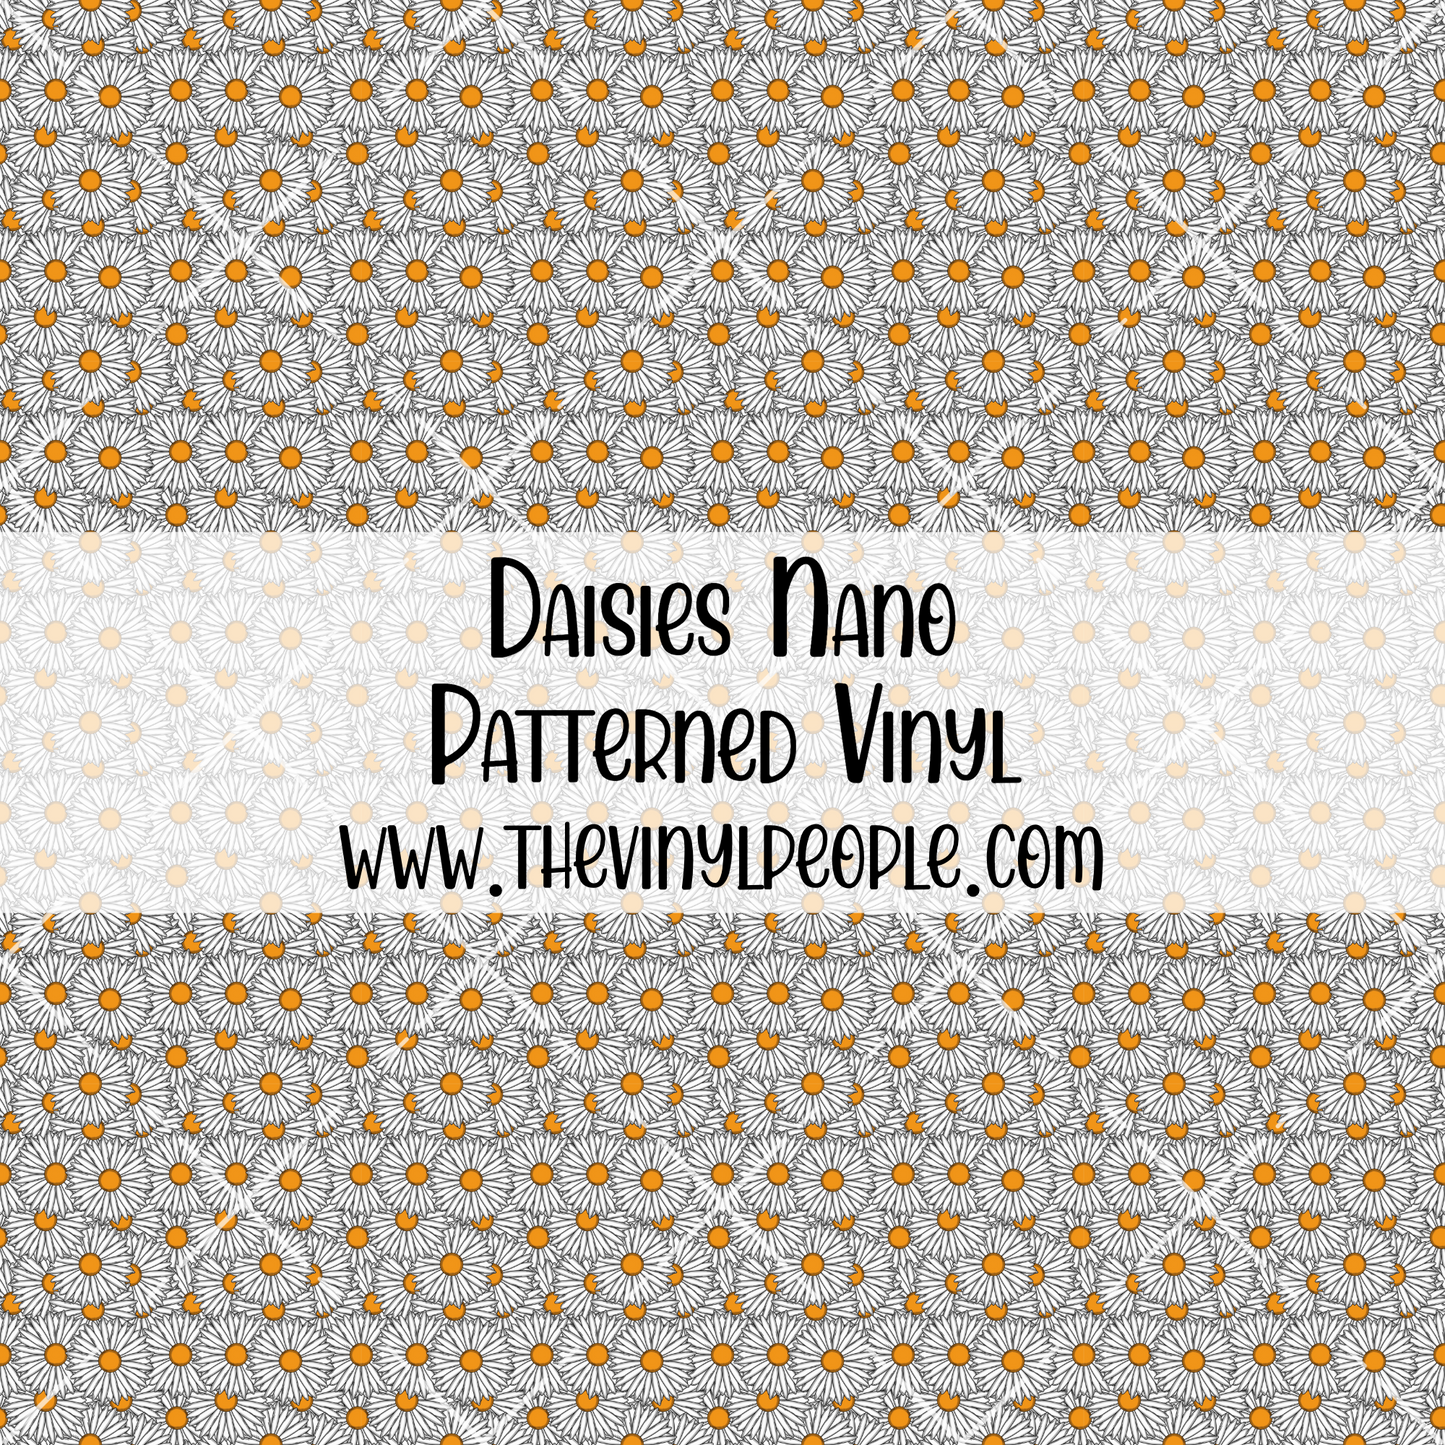 Daisies Patterned Vinyl